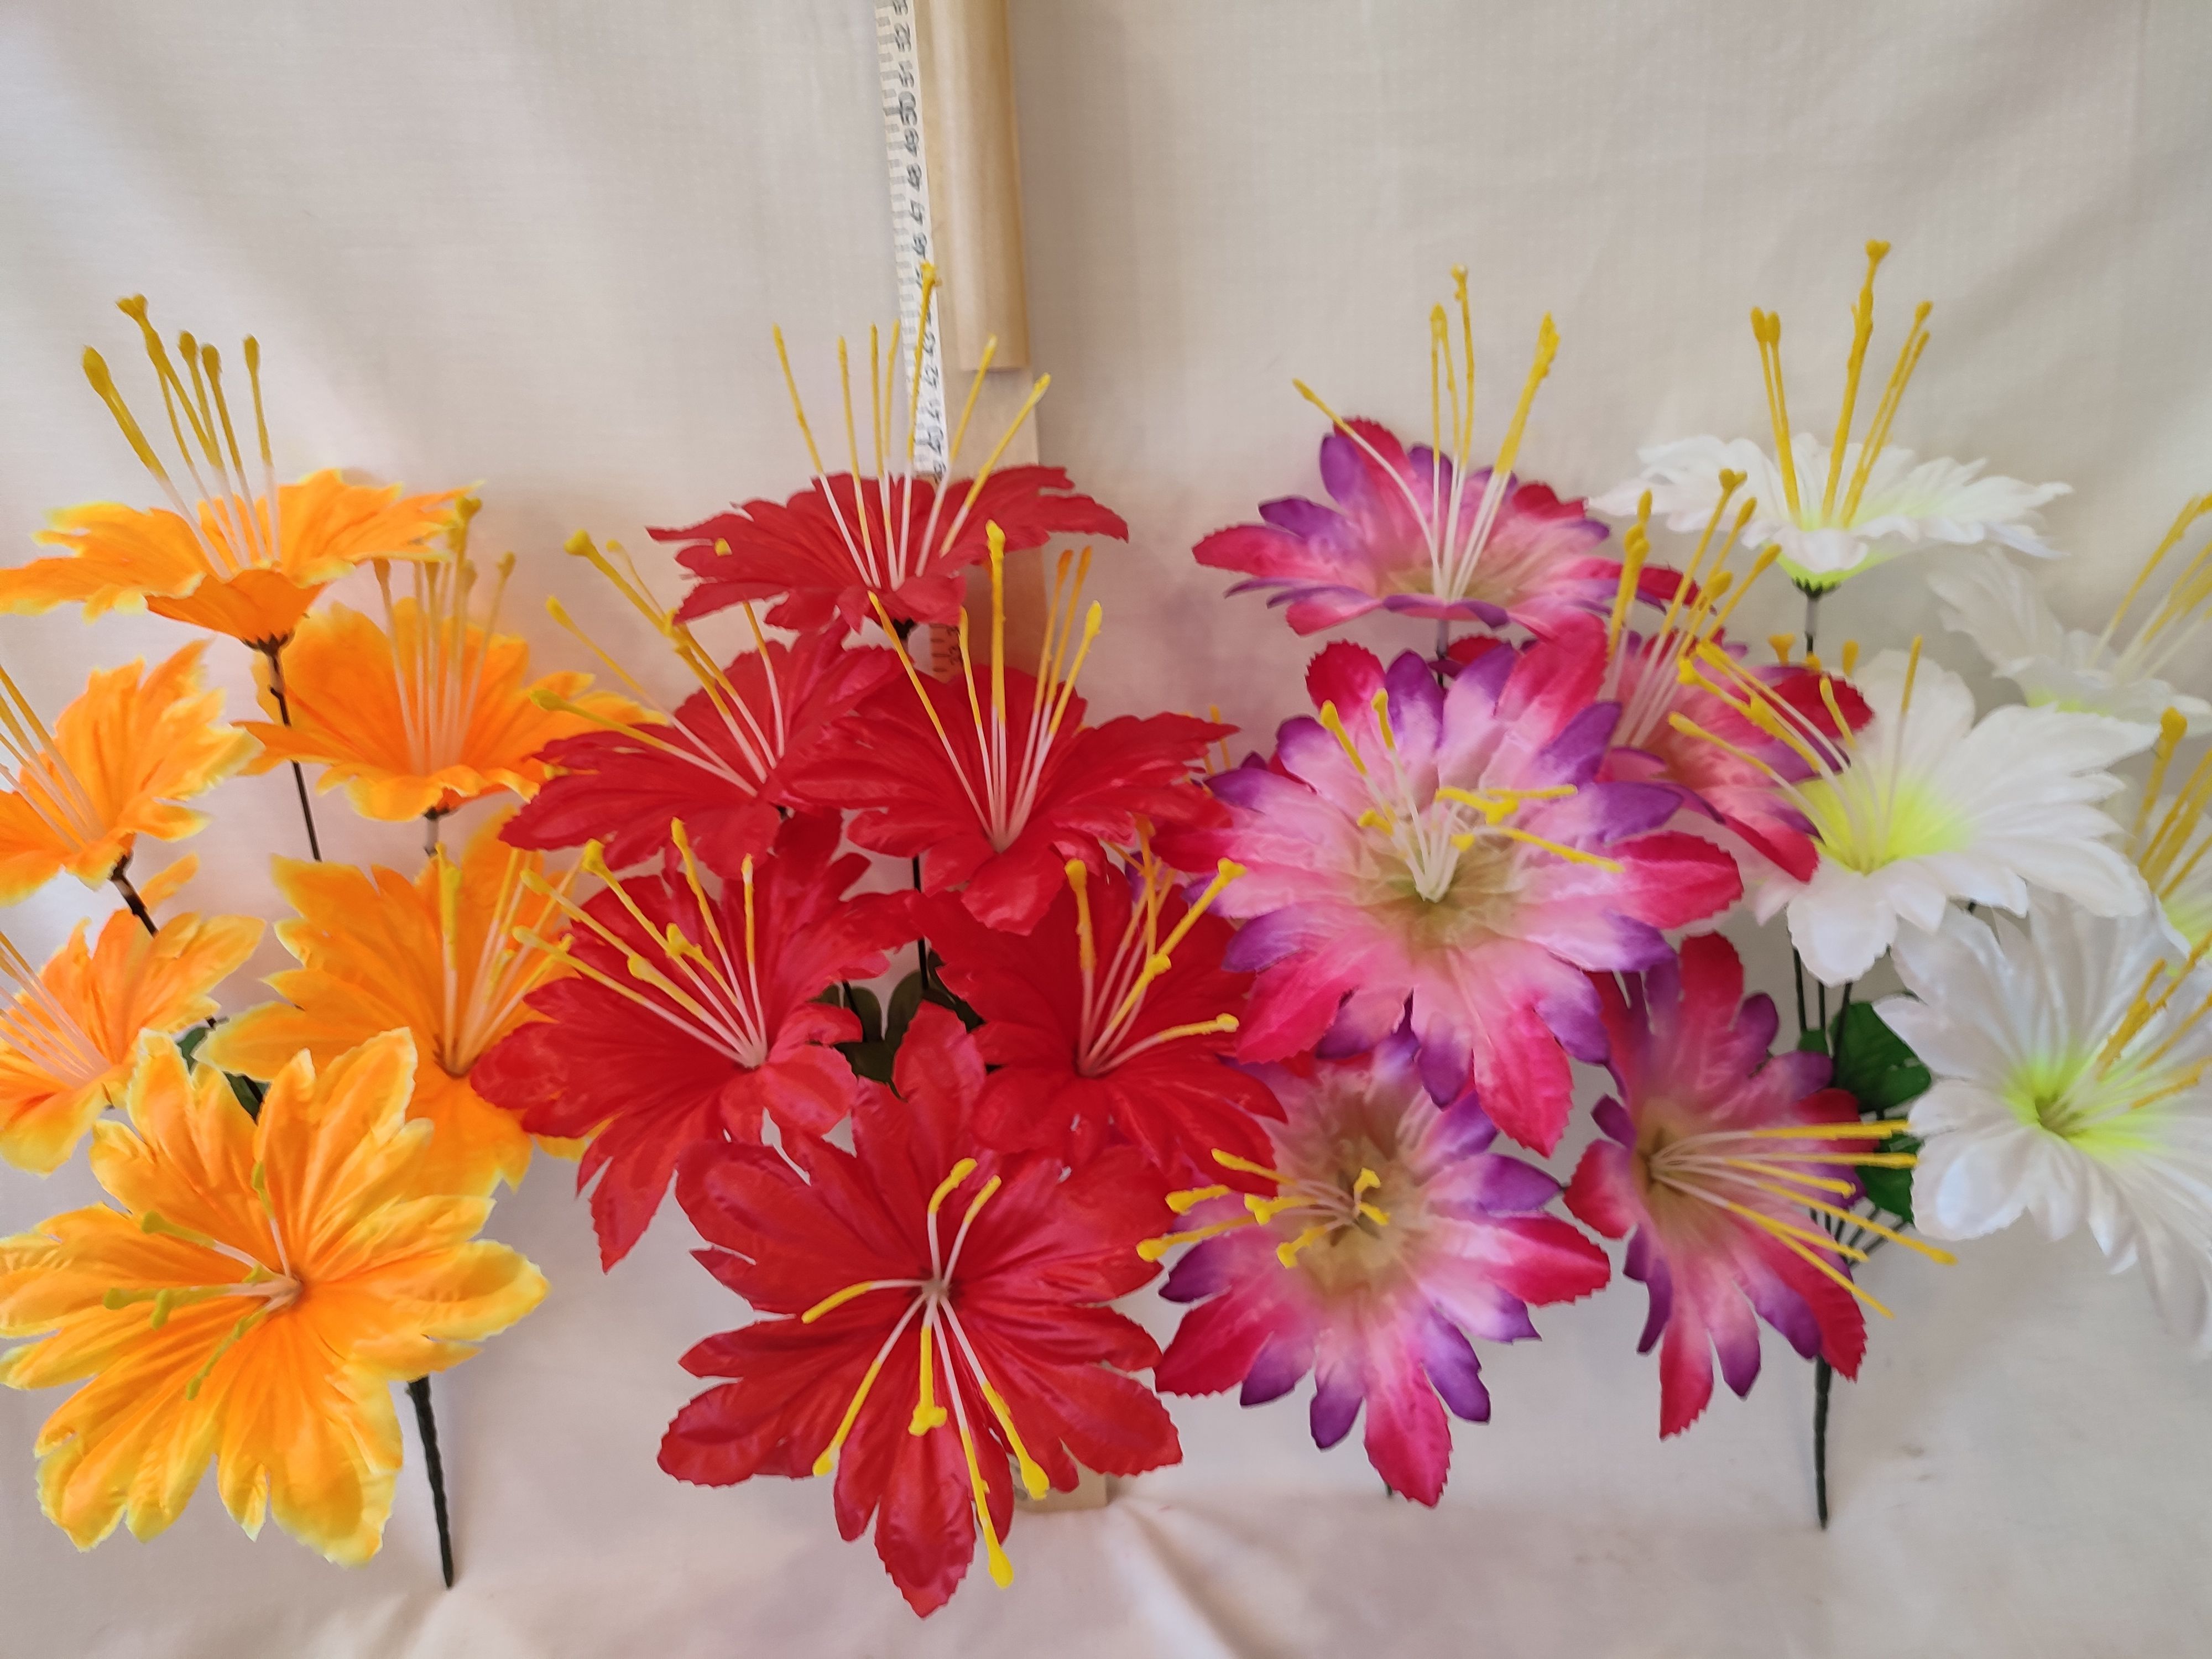 Искусственные цветы для ритуальных услуг оптом недорого с доставкой - интернет-магазин Ритлайн